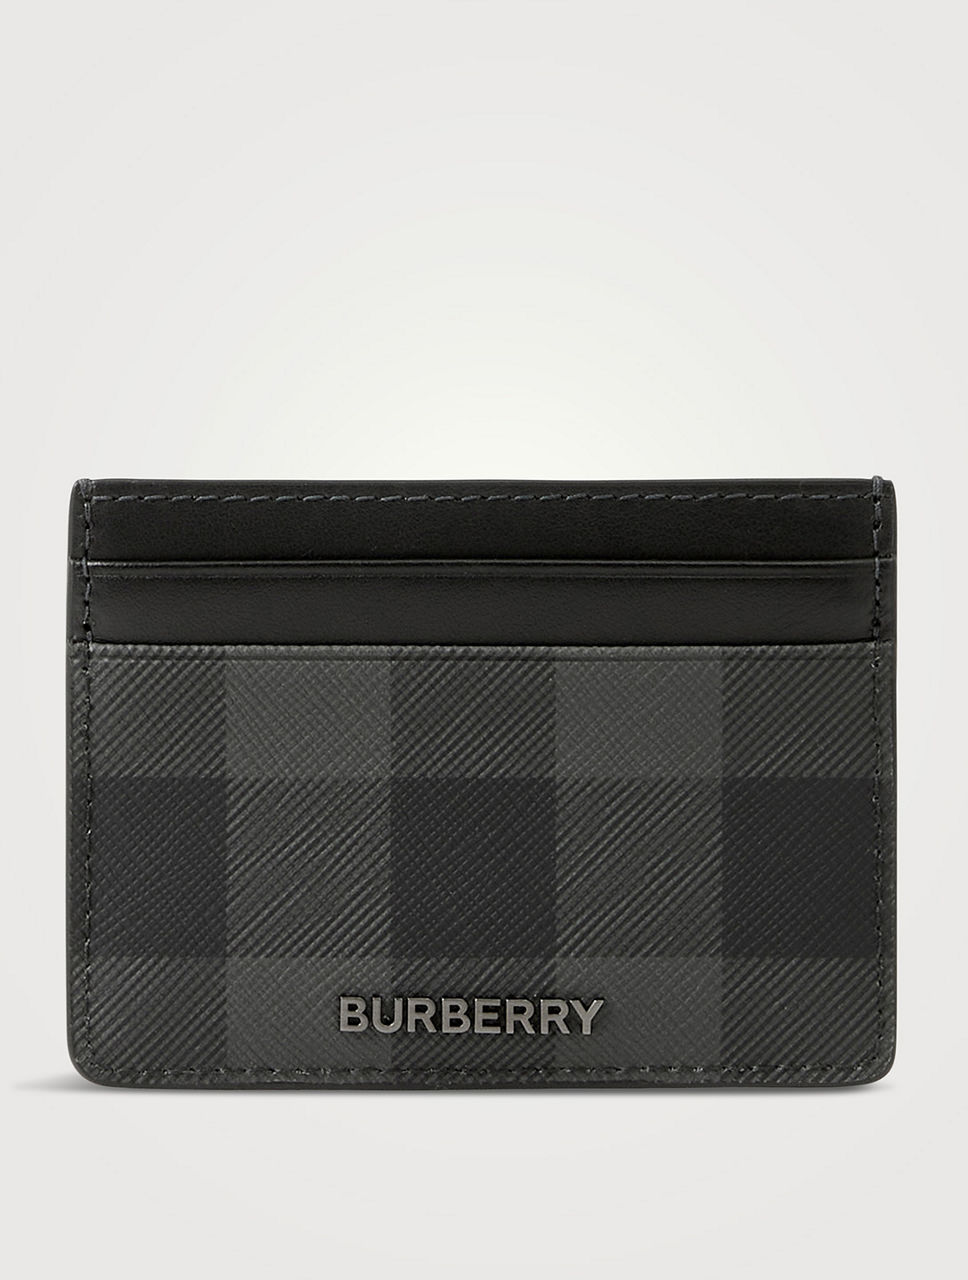 Burberry Gray & Black Check Money Clip Card Holder for Men